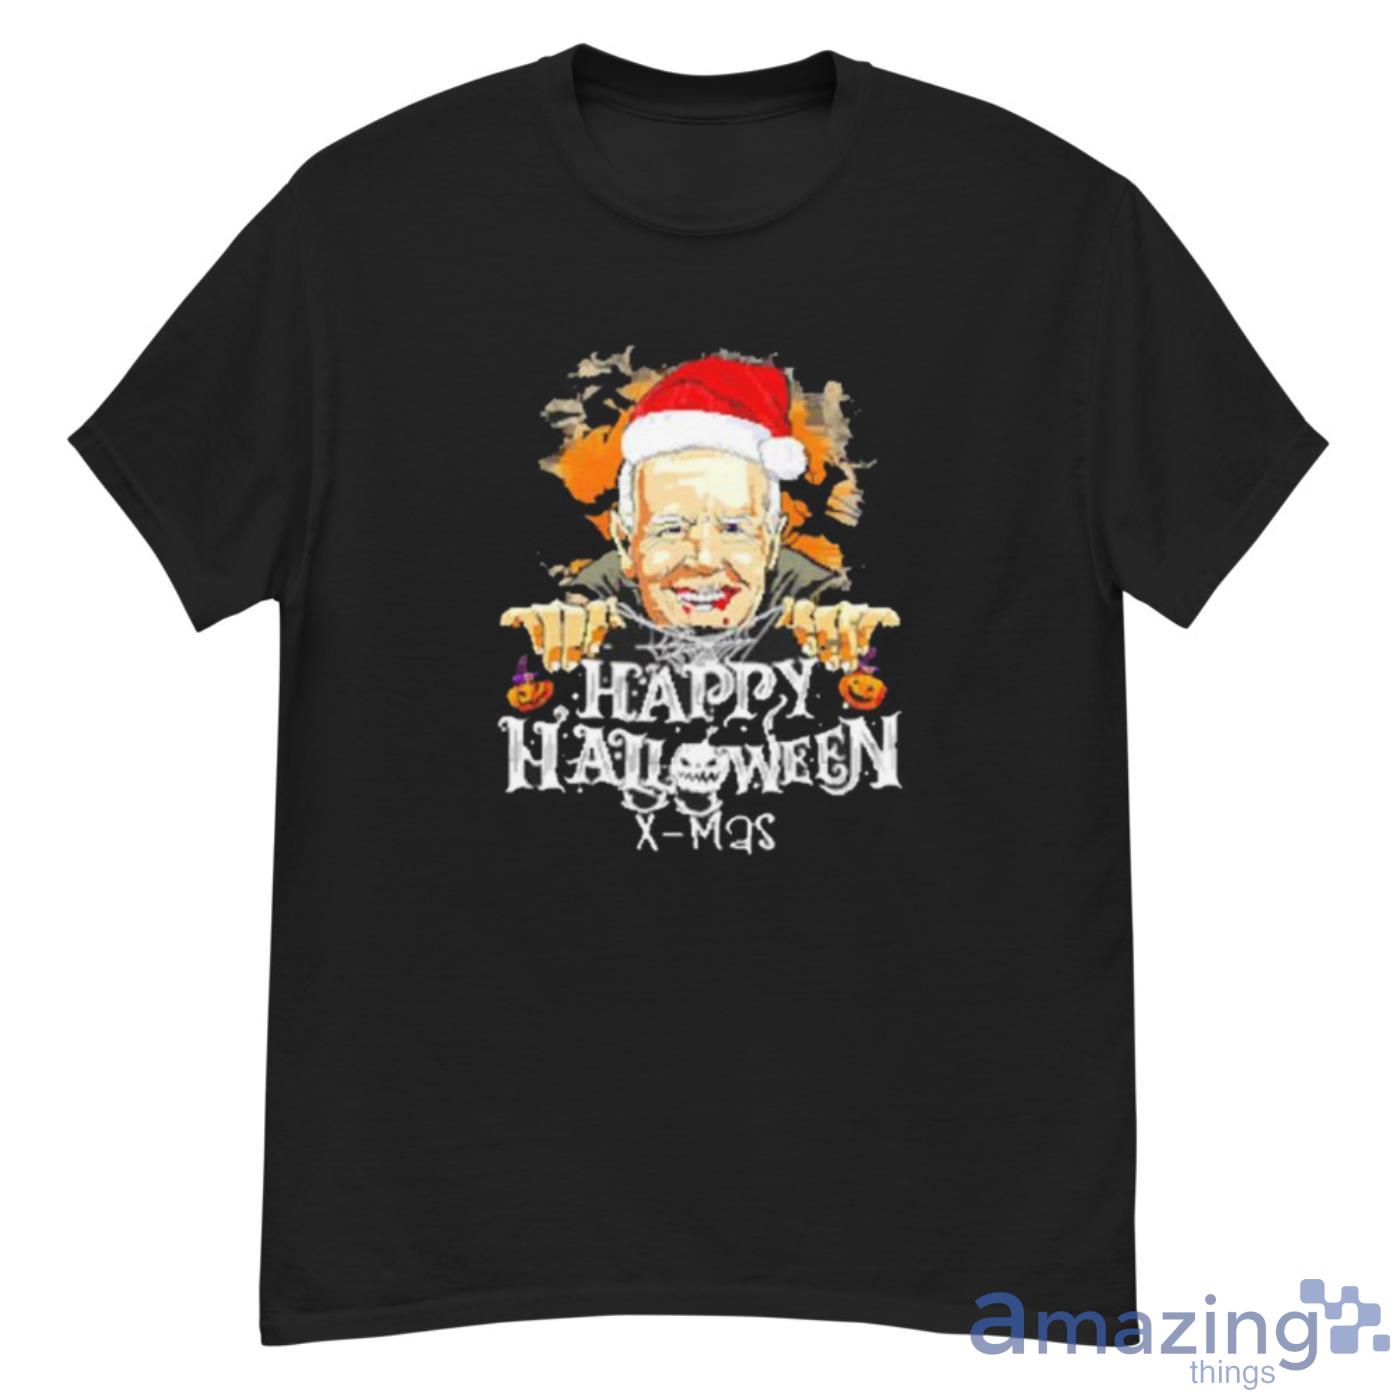 Happy Halloween Merry Xmas Funny Joe Biden Shirt Product Photo 1